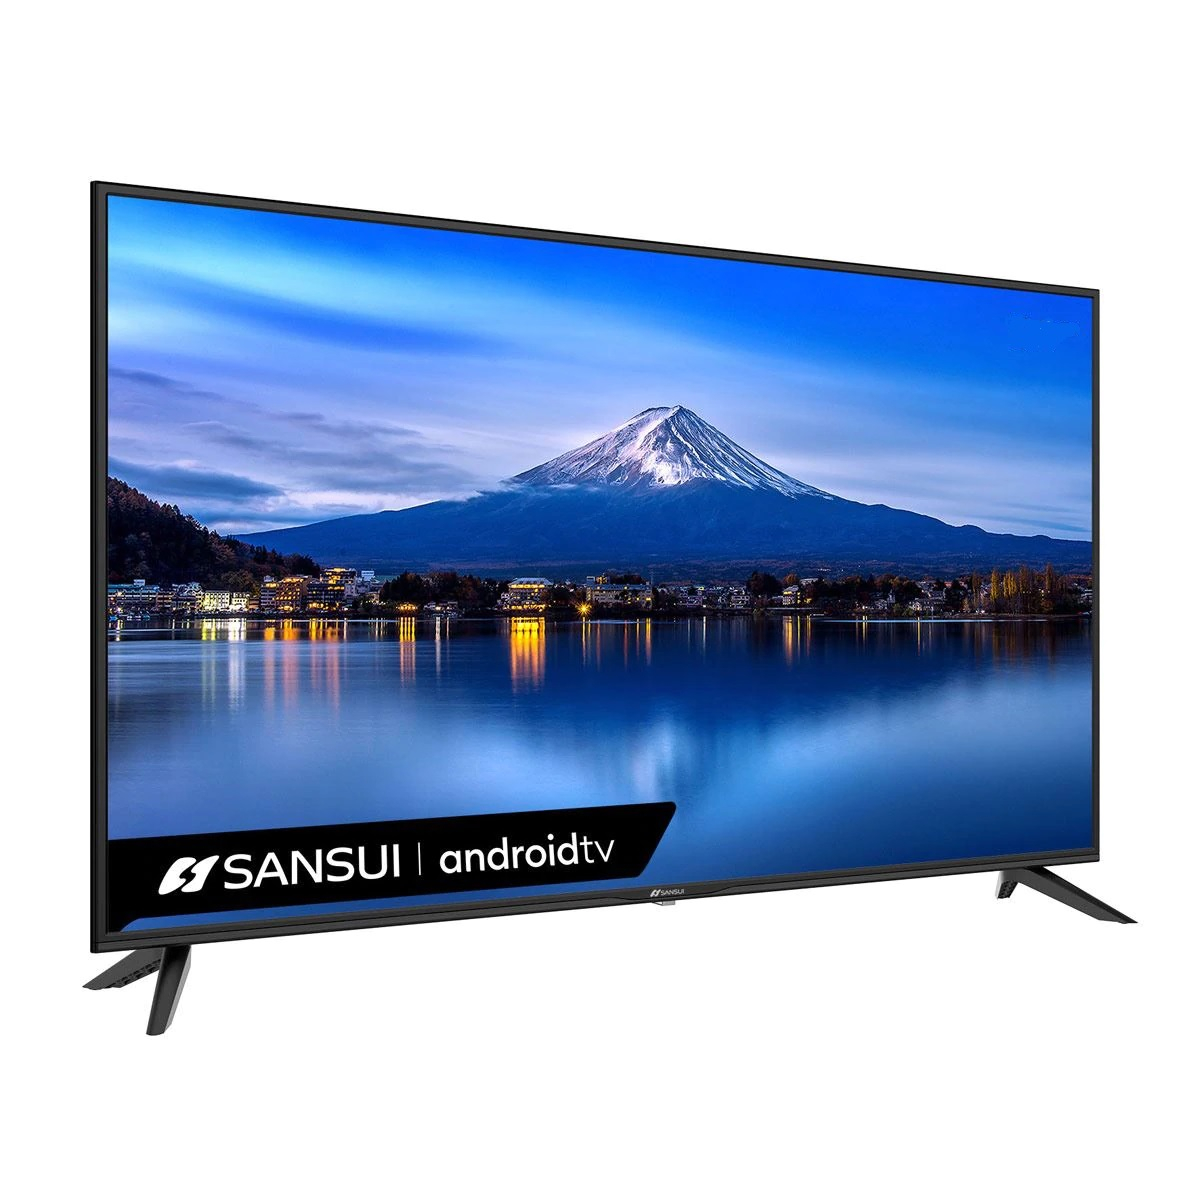 Pantalla Sansui 50 Pulgadas Smart tv 4k UHD SMX-50F3UAD Android TV